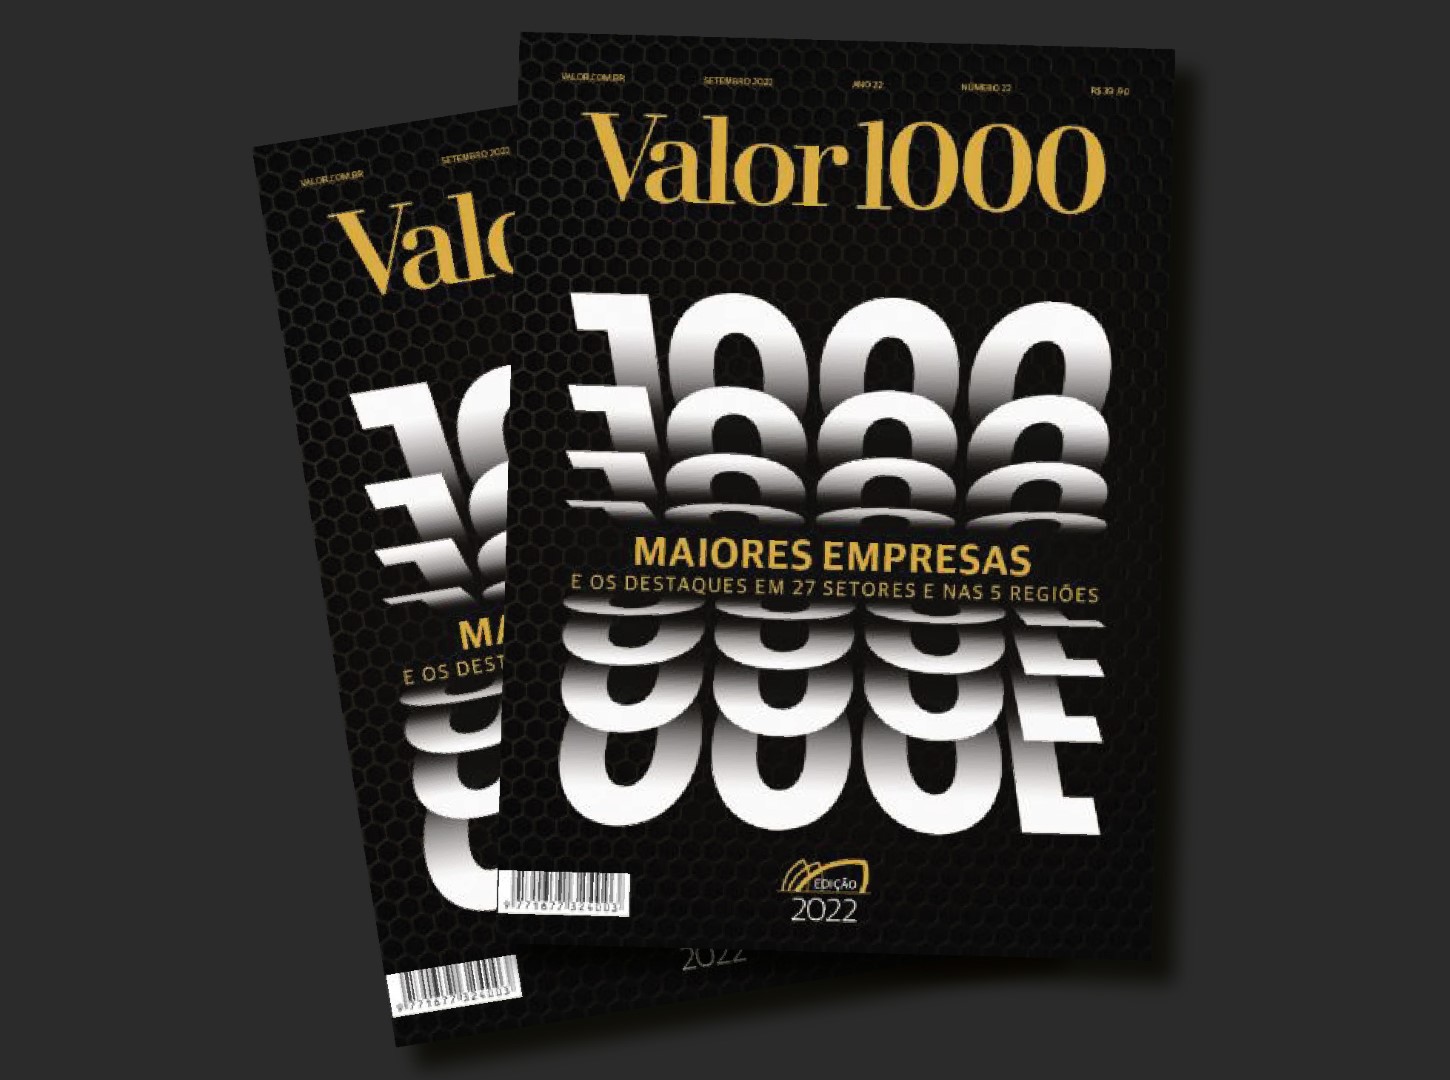 VALOR 1000 I: Cooperativas paranaenses em destaque no ranking das mil maiores empresas do país